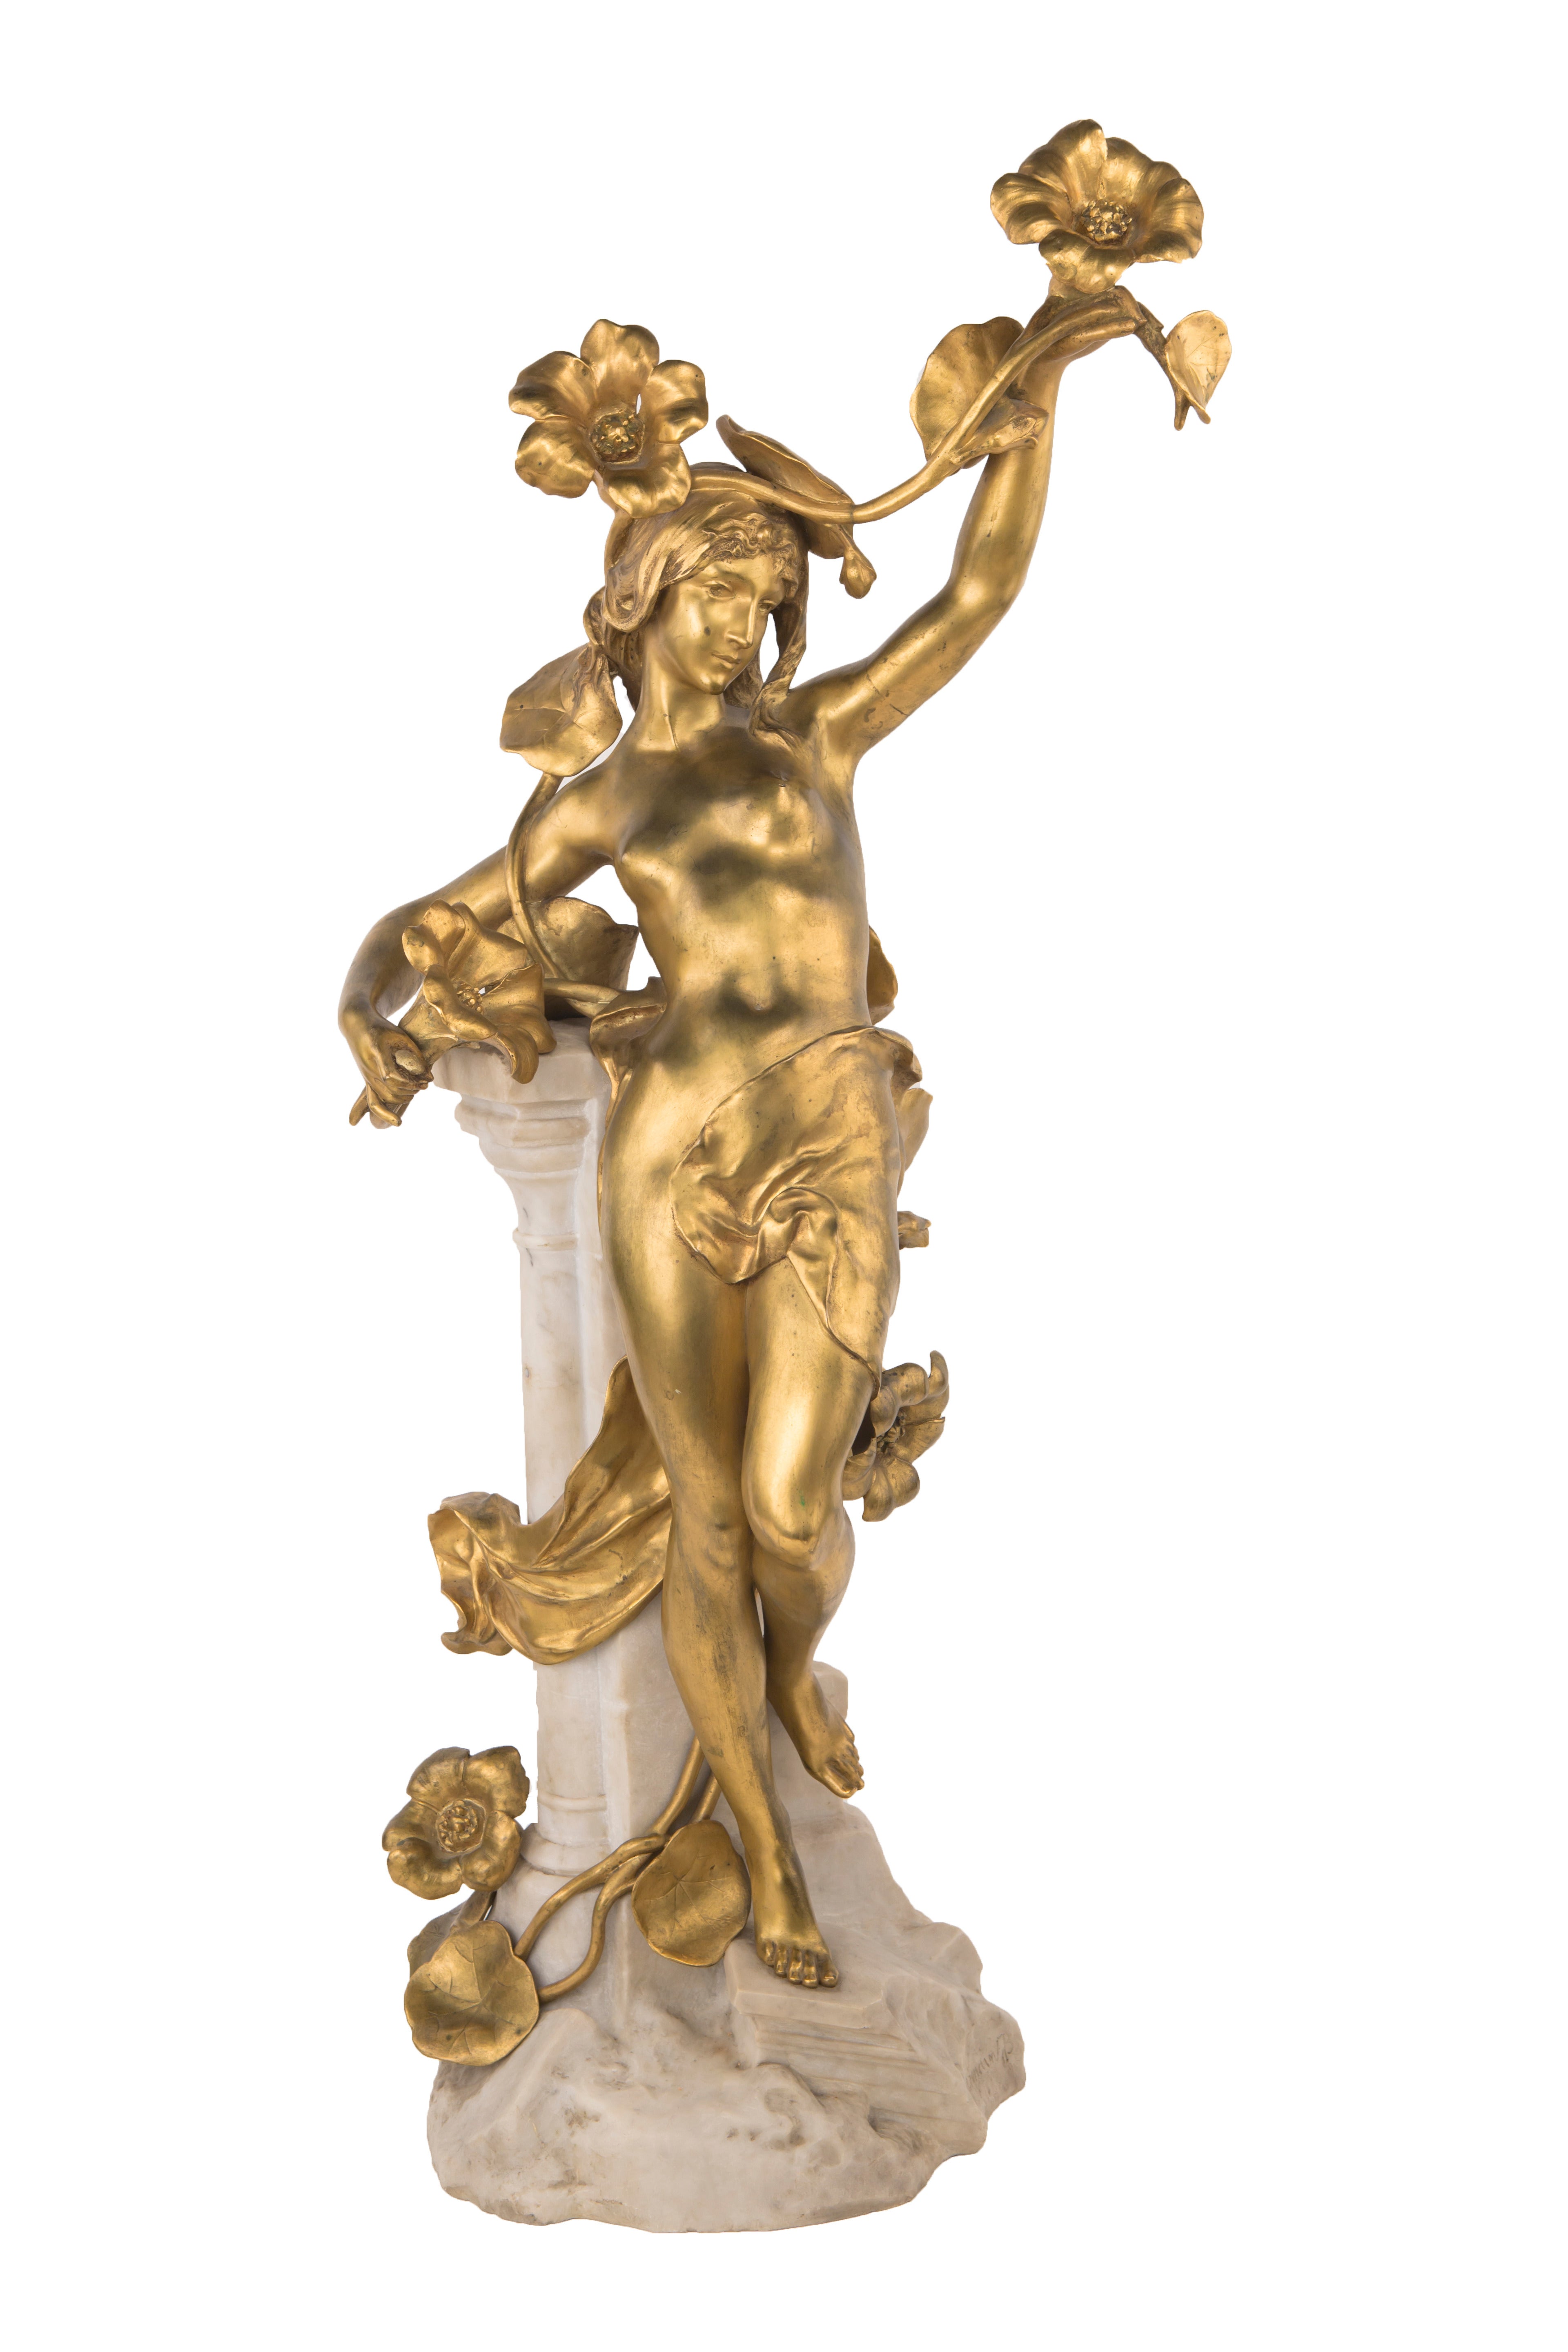 A French Art Nouveau Sculpture by, Jean-Baptiste Germain